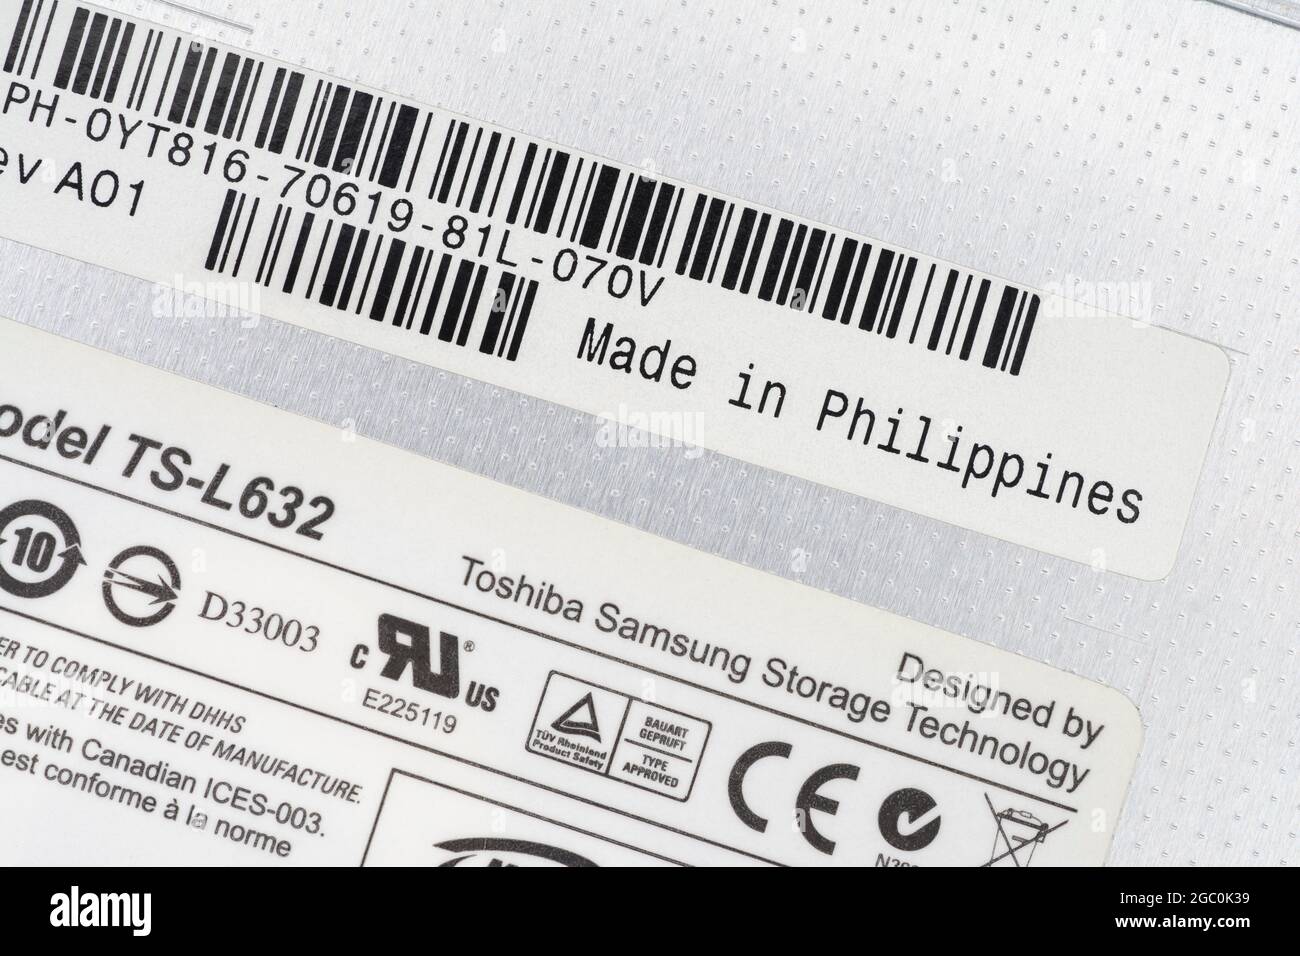 Papieretiketten auf der Rückseite eines von Toshiba-Samsung hergestellten DVD-Schreibers für Laptops mit Etikett „Made in the Philippines“. Zum Offshoring von Teilen. Stockfoto